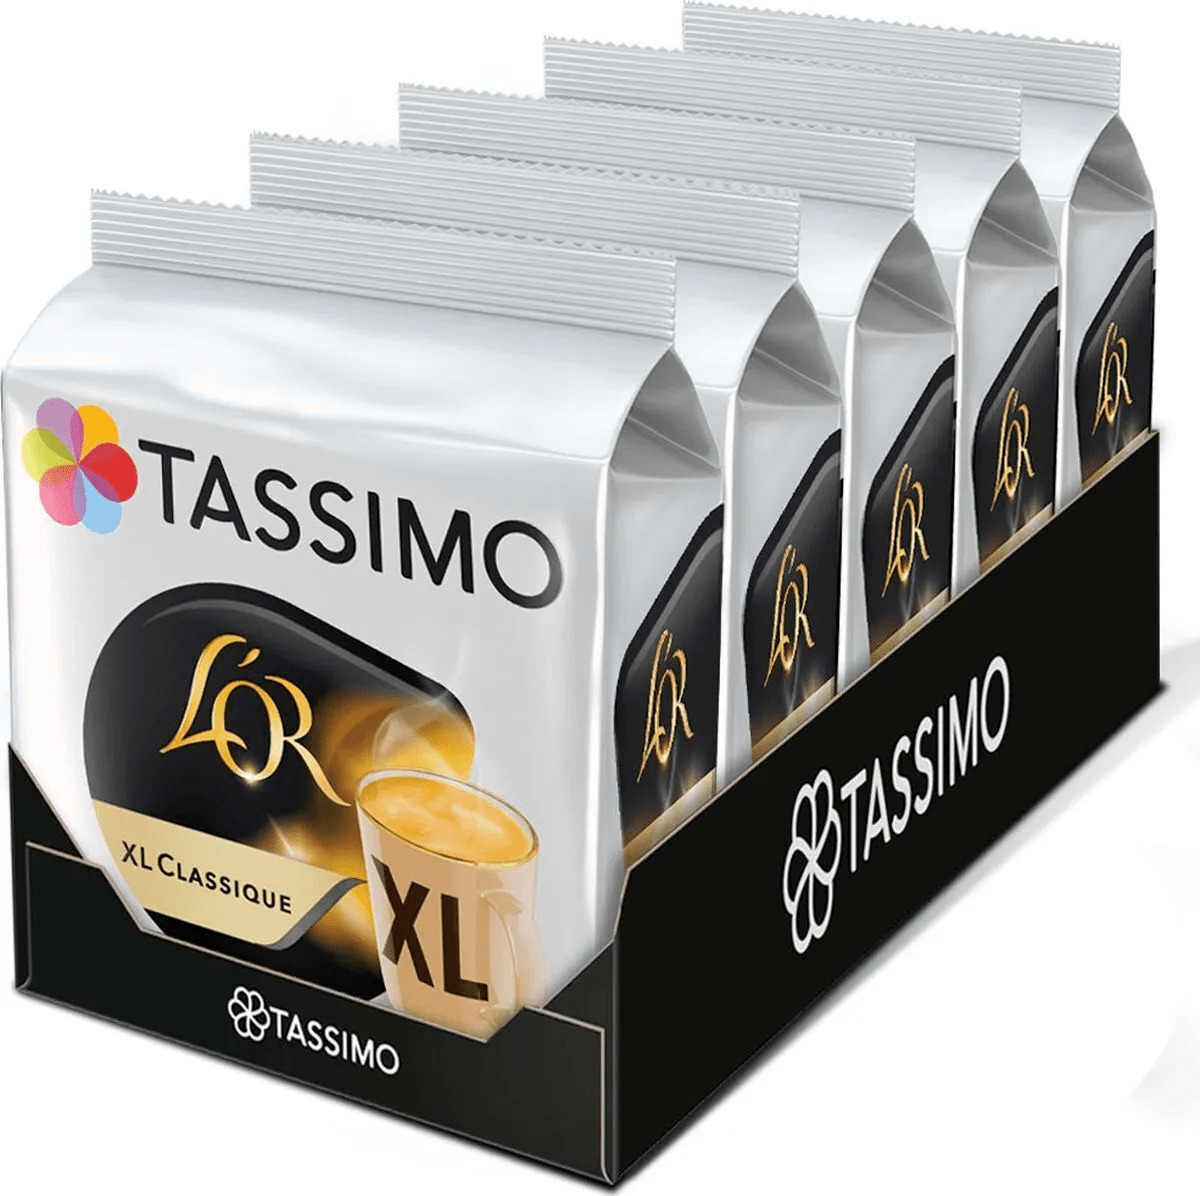 Кофе в капсулах Tassimo L'or Xl Classique, 80 порций